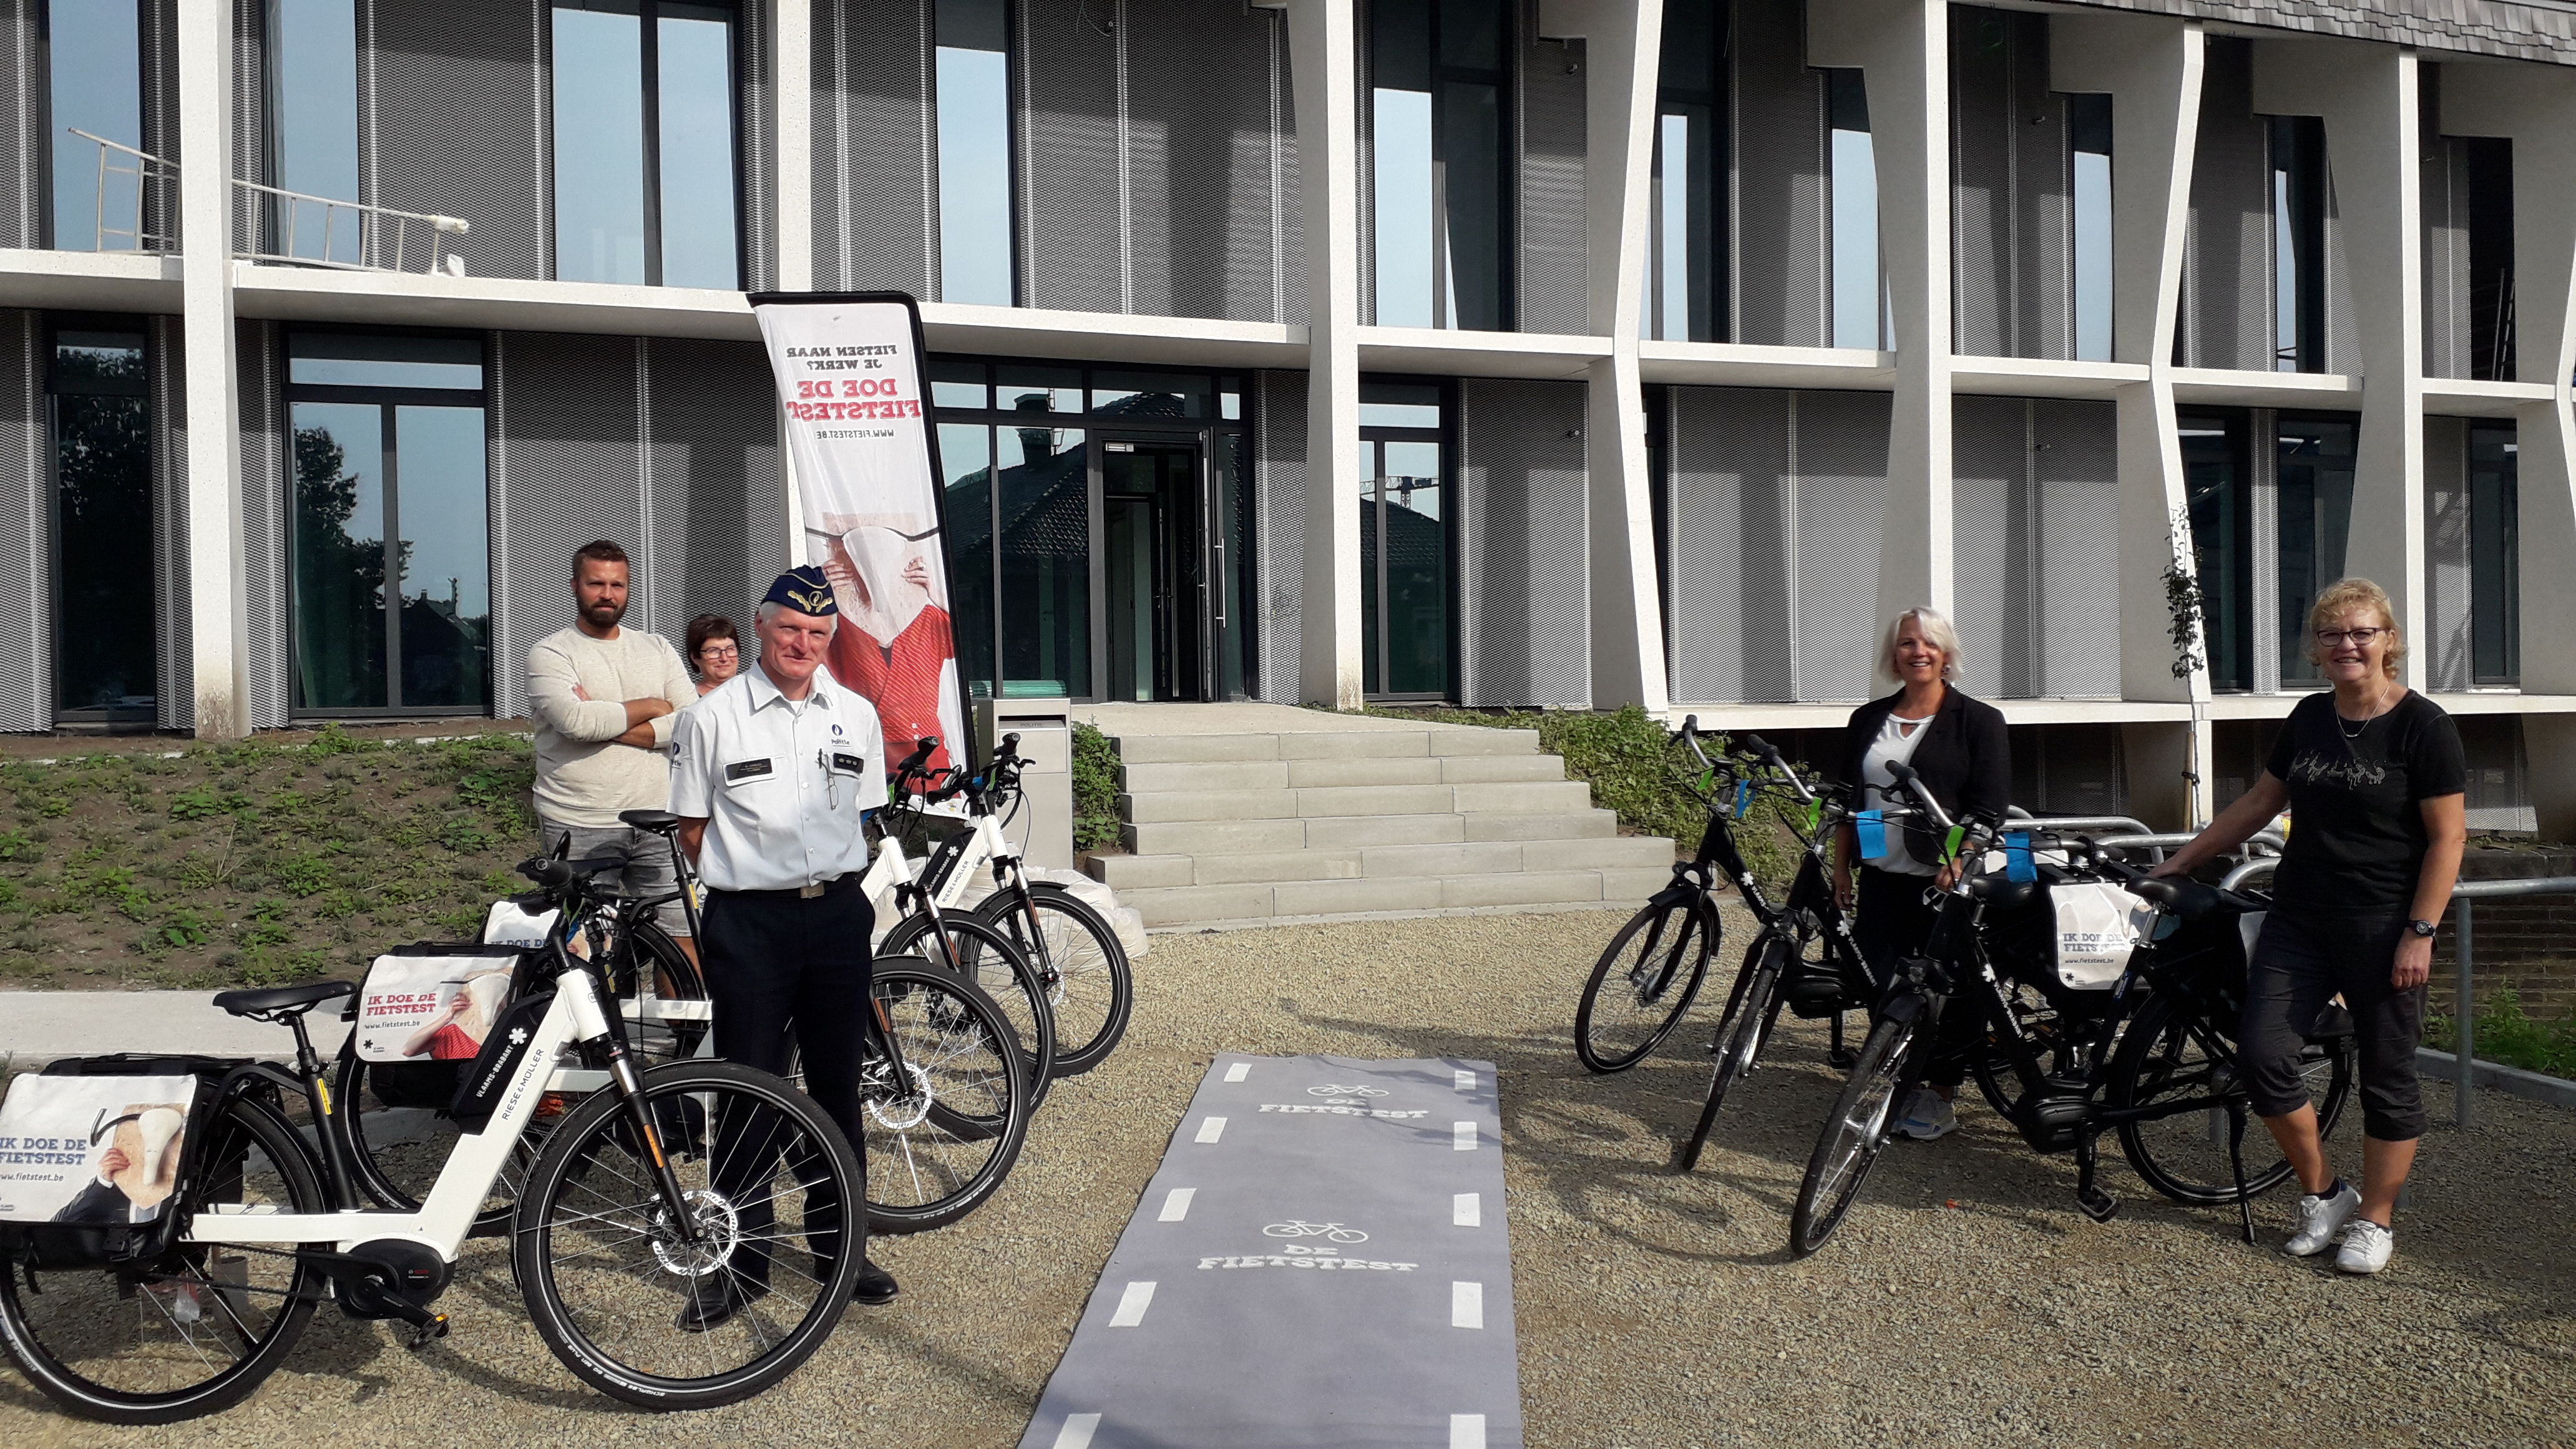 Politiezone Lubbeek wil meer personeel op de fiets en doet mee aan De Fietstest van de provincie Vlaams-Brabant